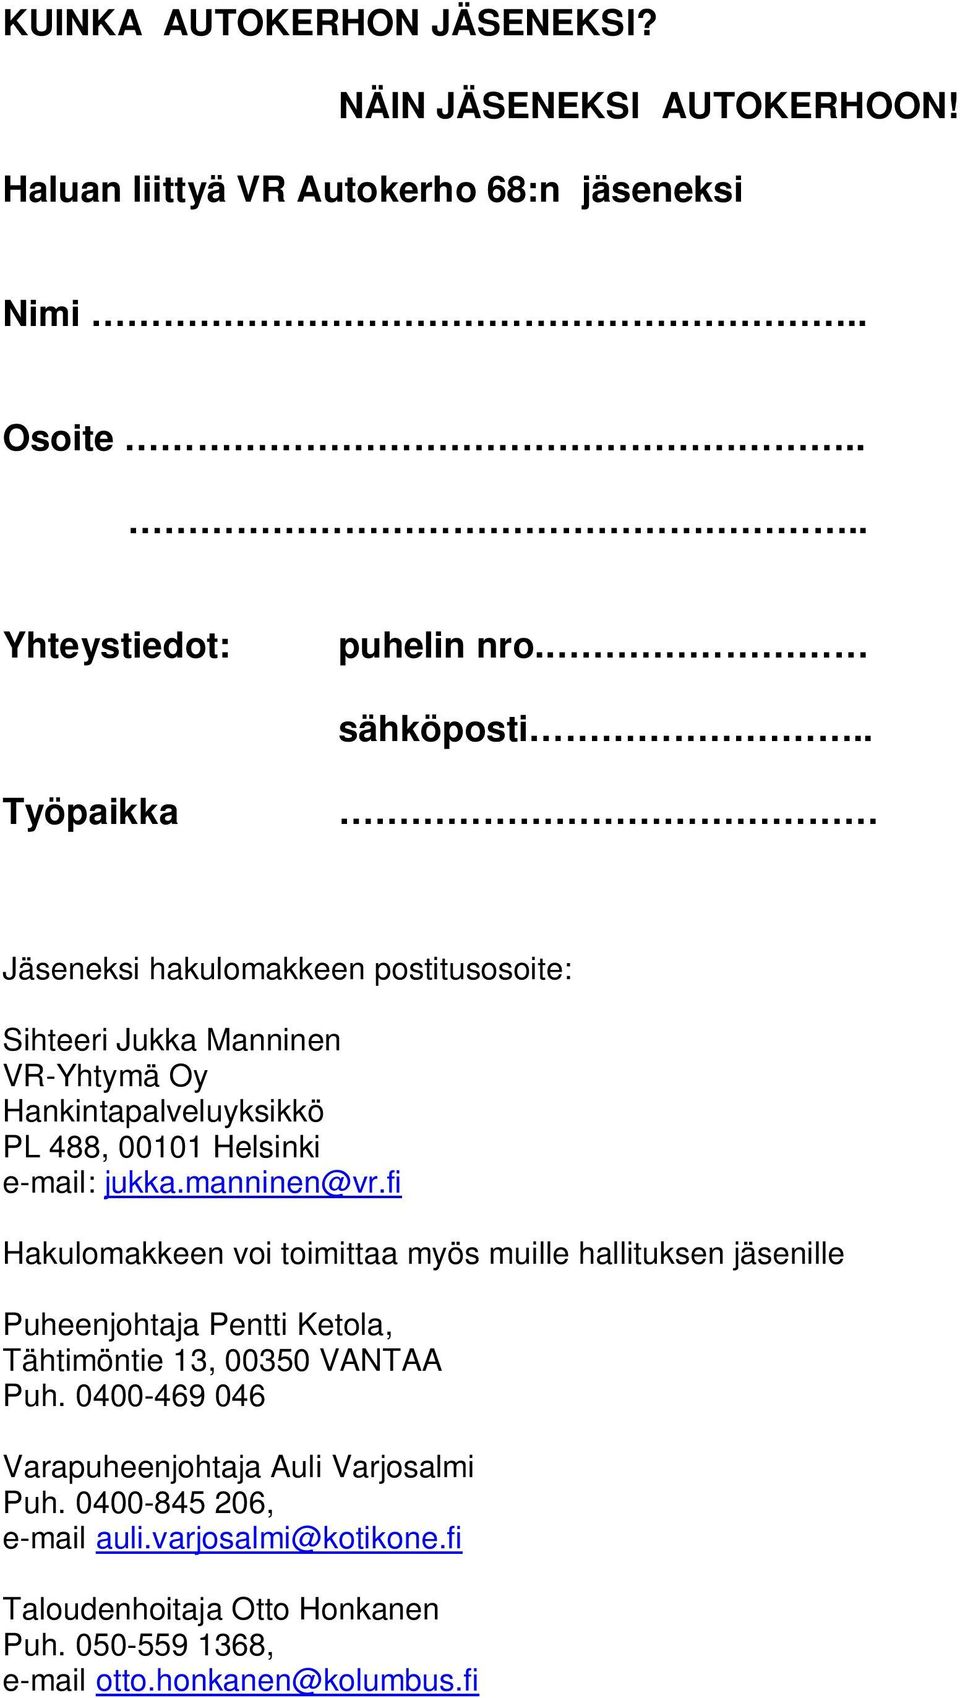 . Työpaikka Jäseneksi hakulomakkeen postitusosoite: Sihteeri Jukka Manninen VR-Yhtymä Oy Hankintapalveluyksikkö PL 488, 00101 Helsinki e-mail: jukka.